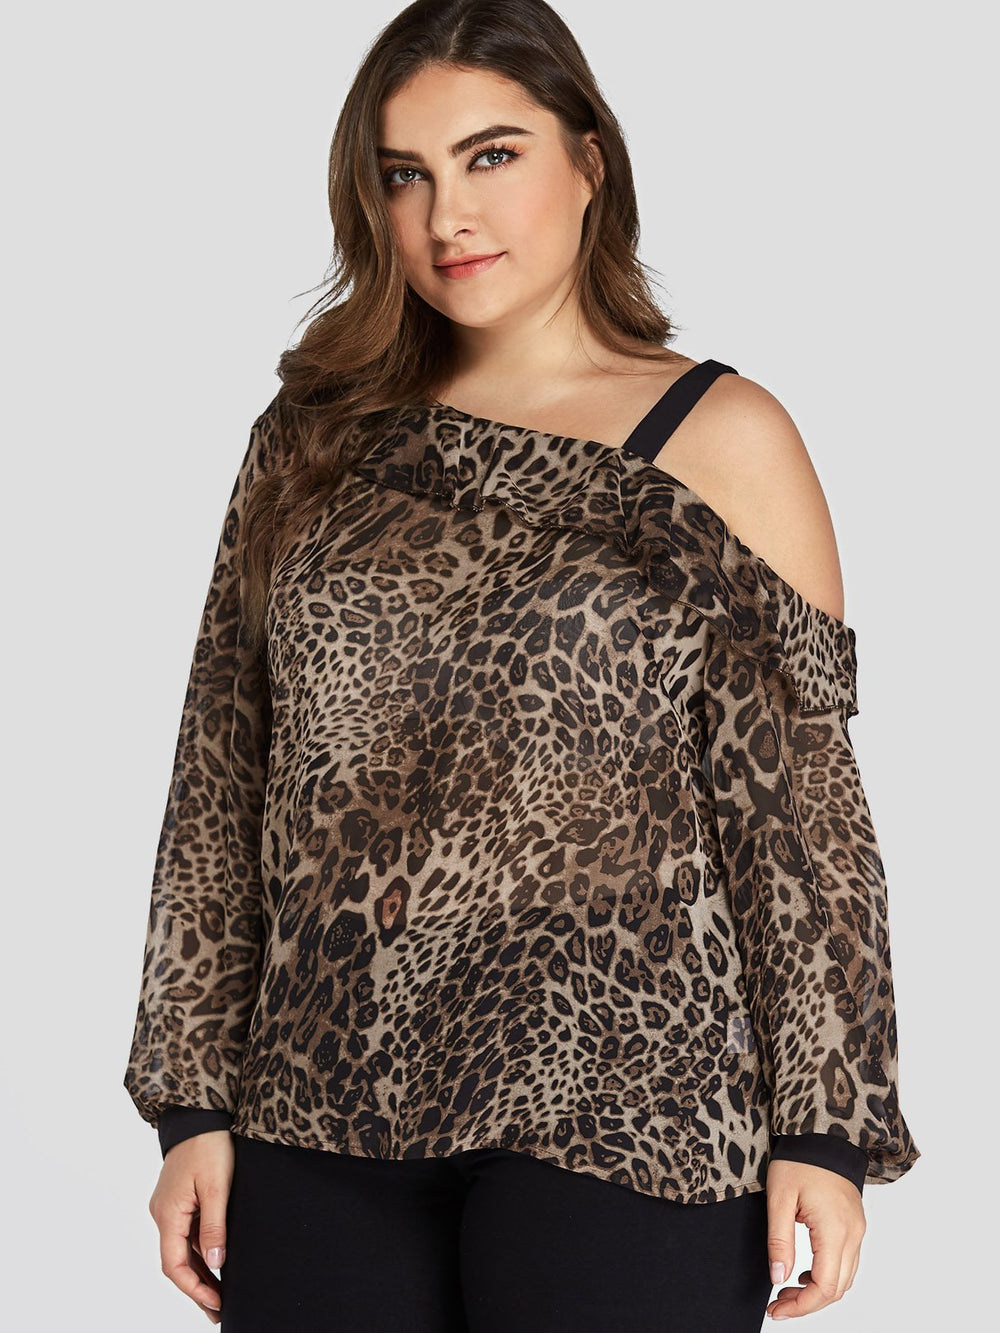 Ladies Leopard Plus Size Tops